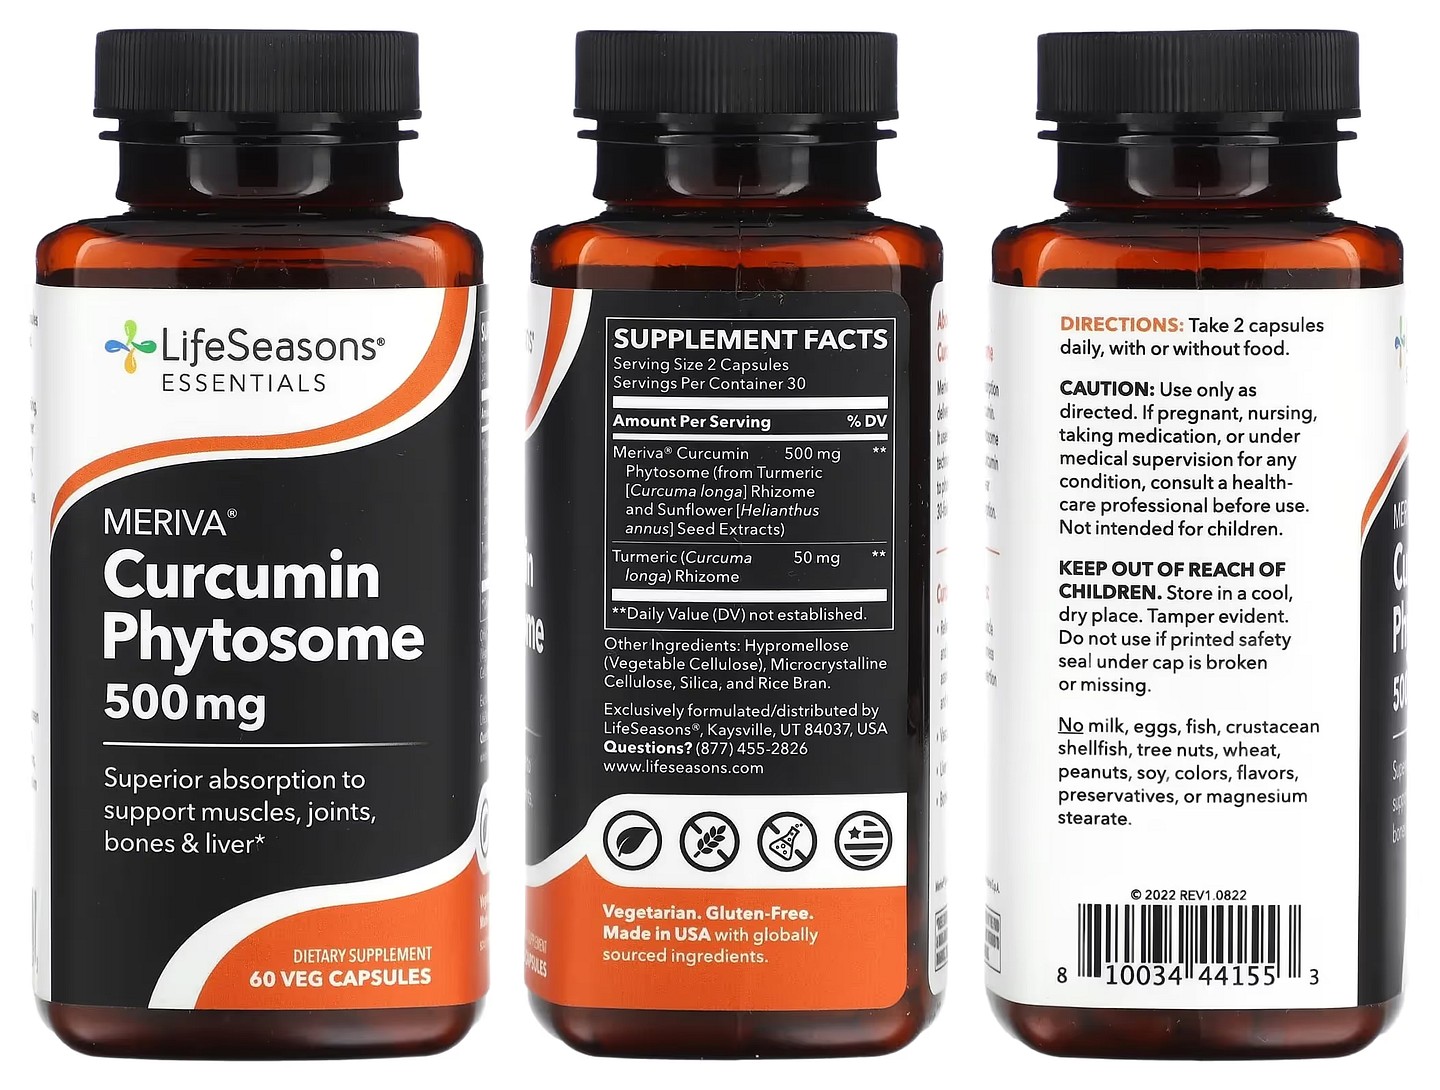 LifeSeasons, Meriva Curcumin Phytosome packaging